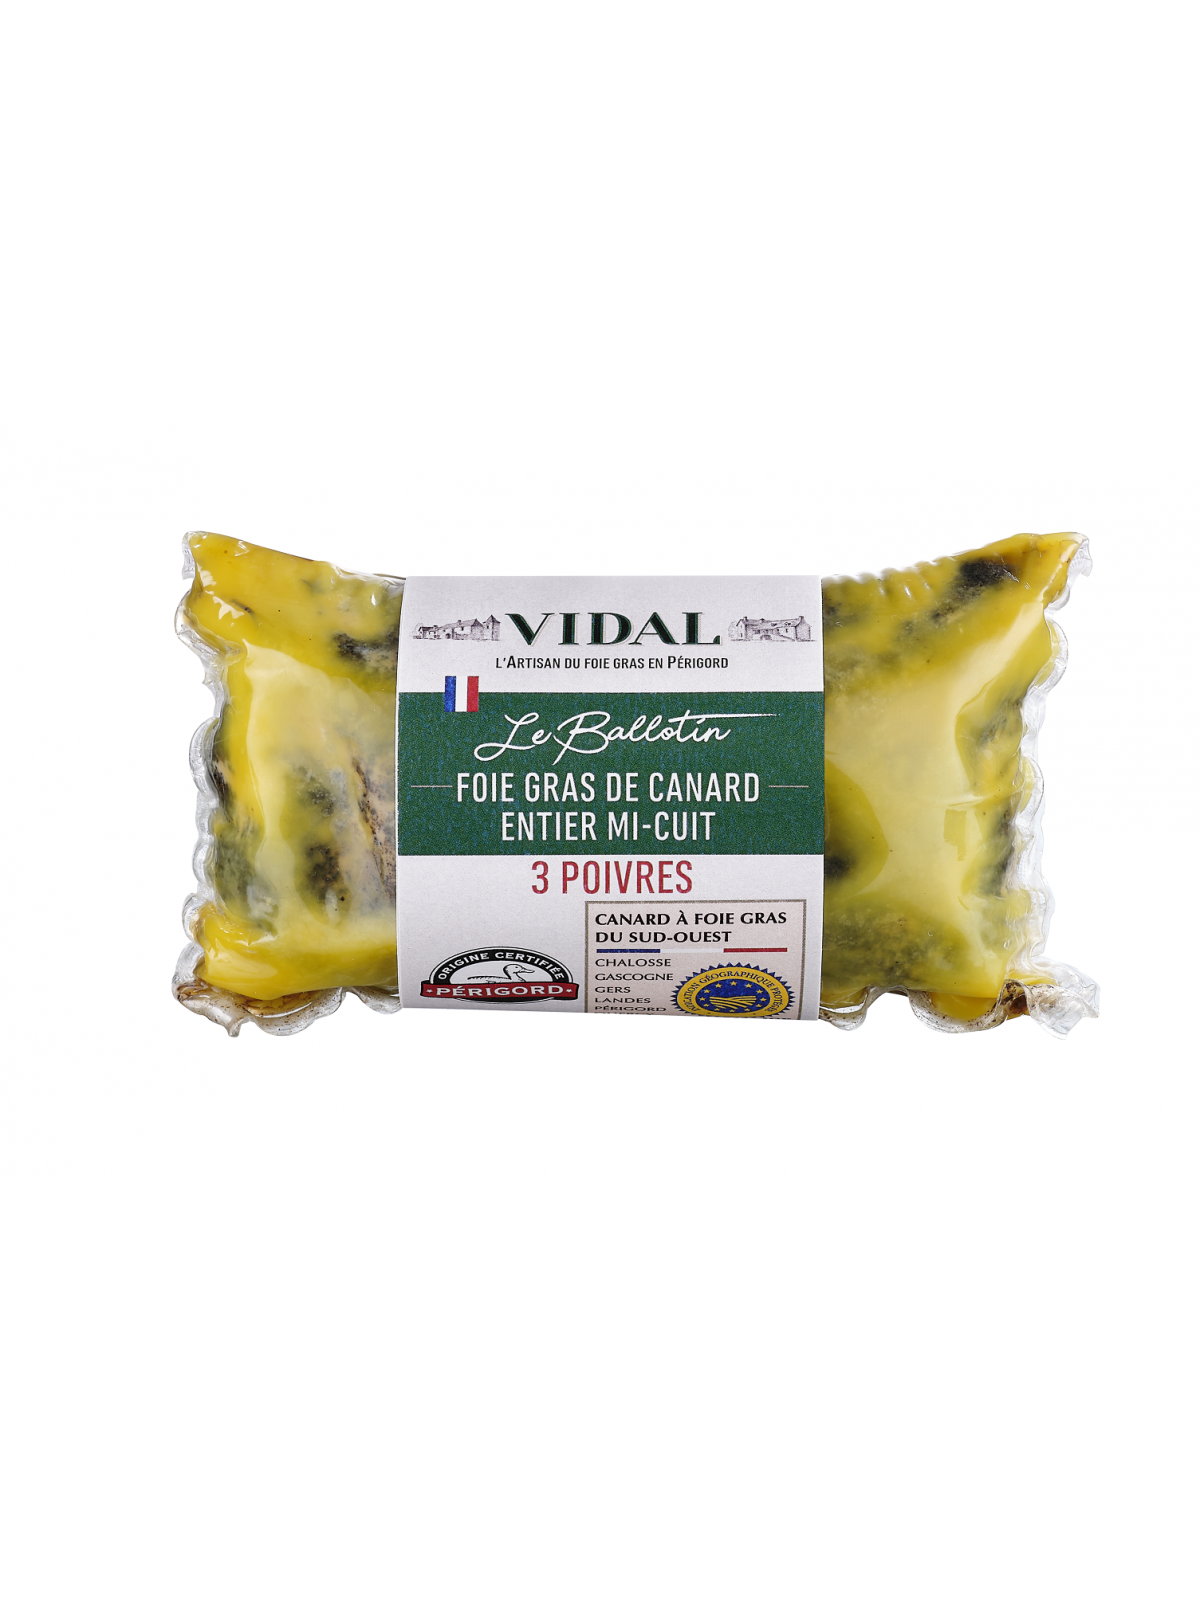 Trouver du foie gras de canard mi-cuit halal sur Rungis - Yzet - Yzet